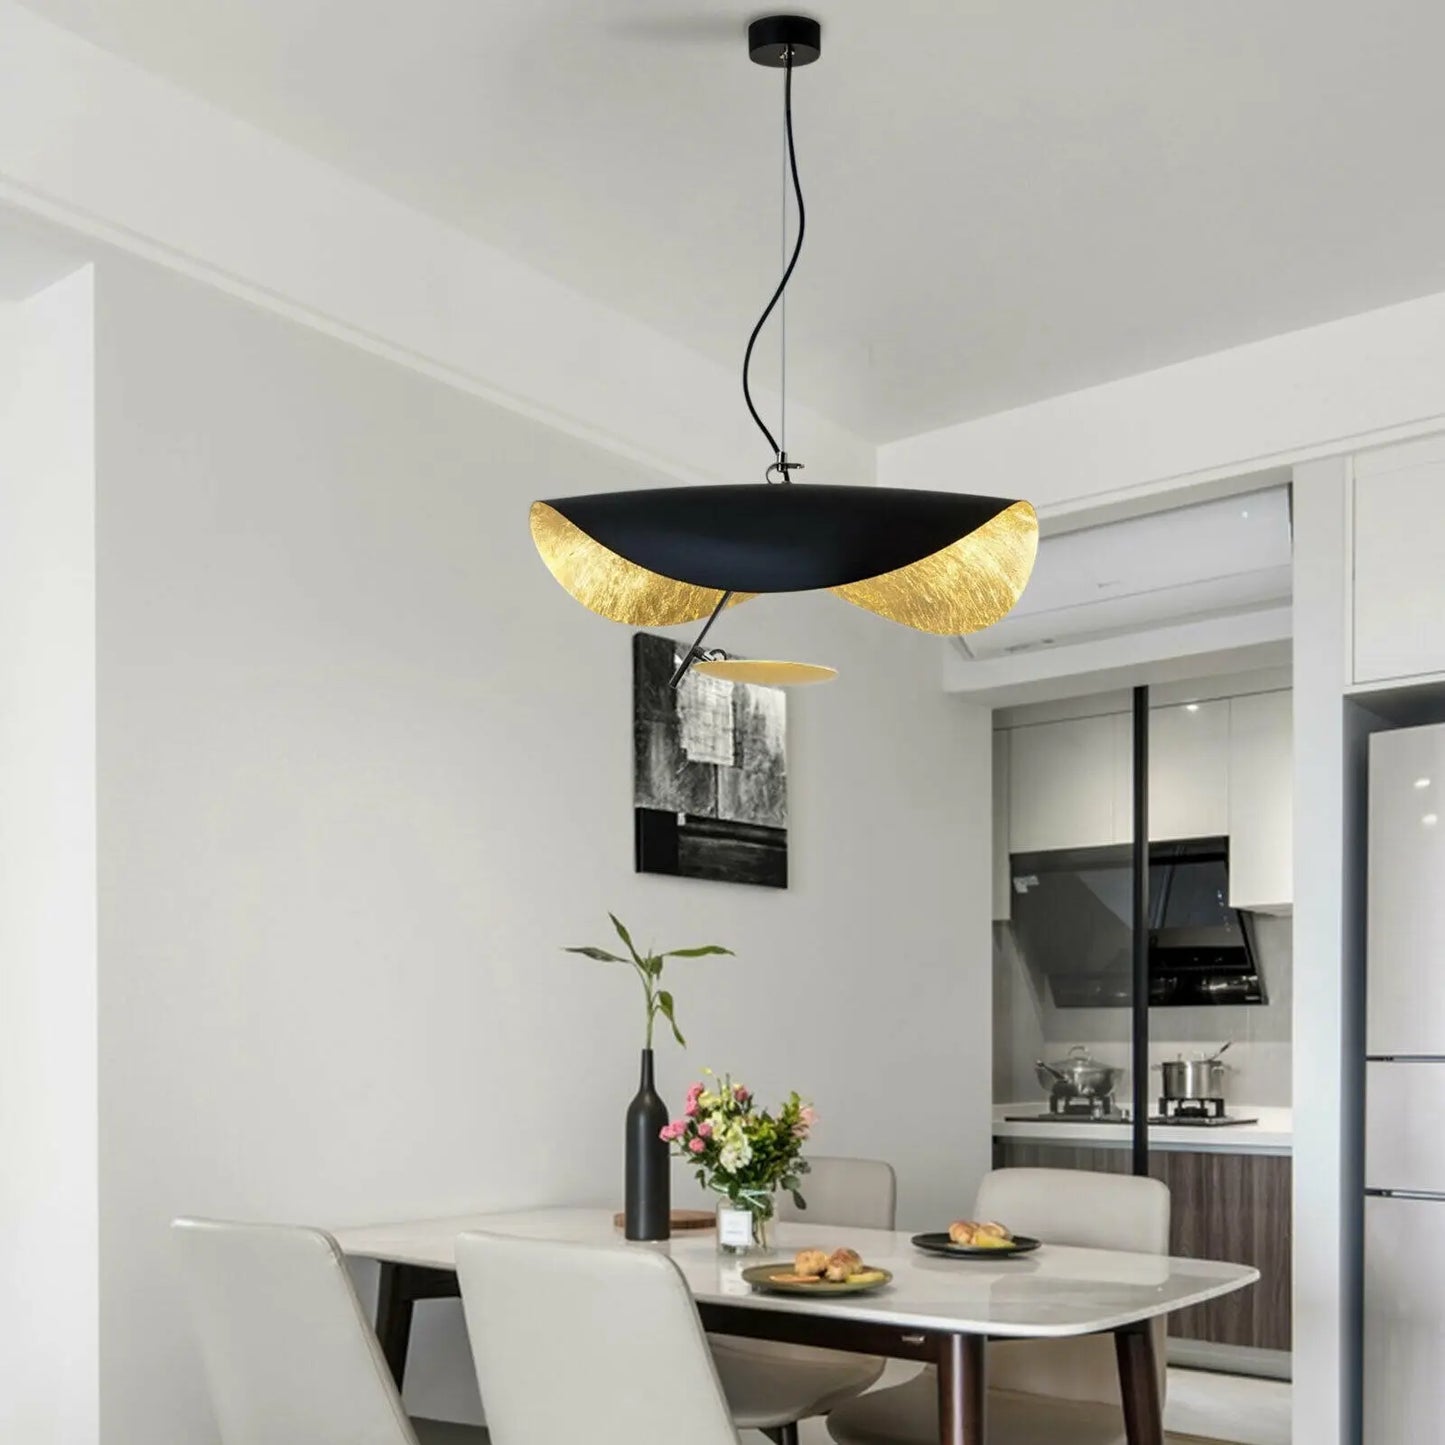 Design hanglamp eettafel Lampfabriek